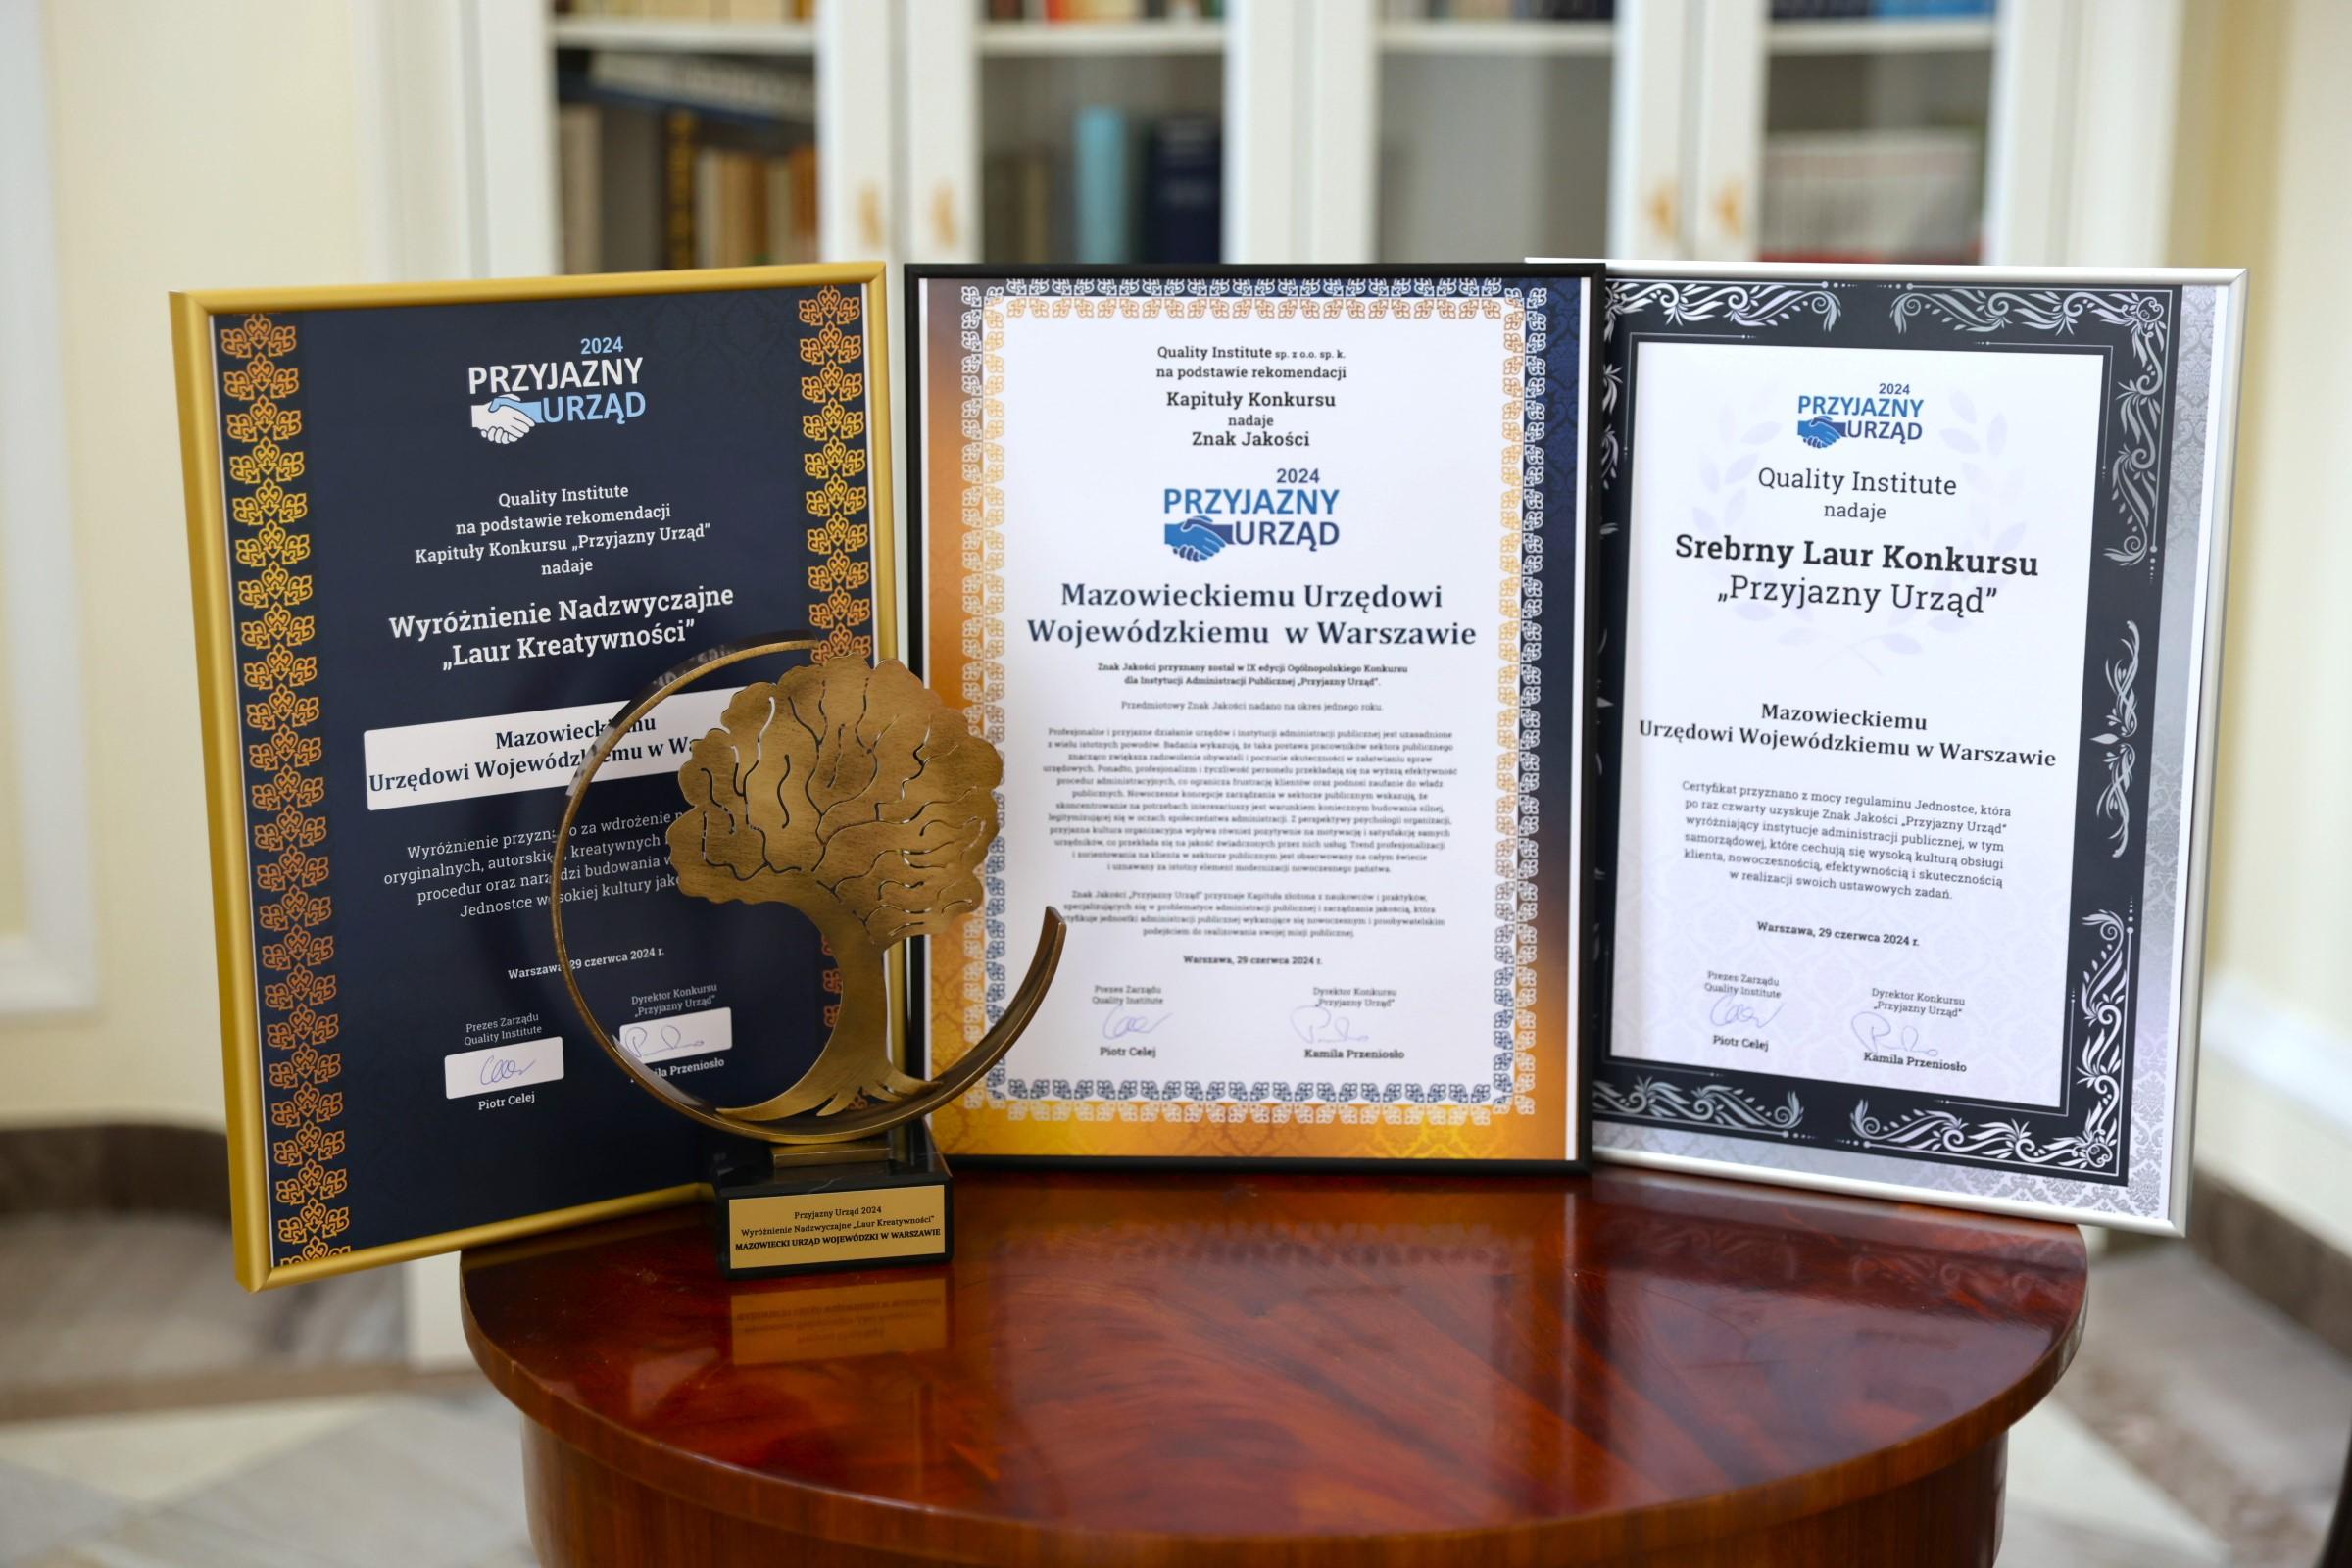 Zdjęcie przedstawia certyfikaty oprawione w ramki. Od lewej "Wyróżnienie nadzwyczajne Laur Kreatywności", po środku: "Znak Jakości Przyjazny Urząd 2024", po prawej Srebrny Laur Konkursu „Przyjazny Urząd”. 